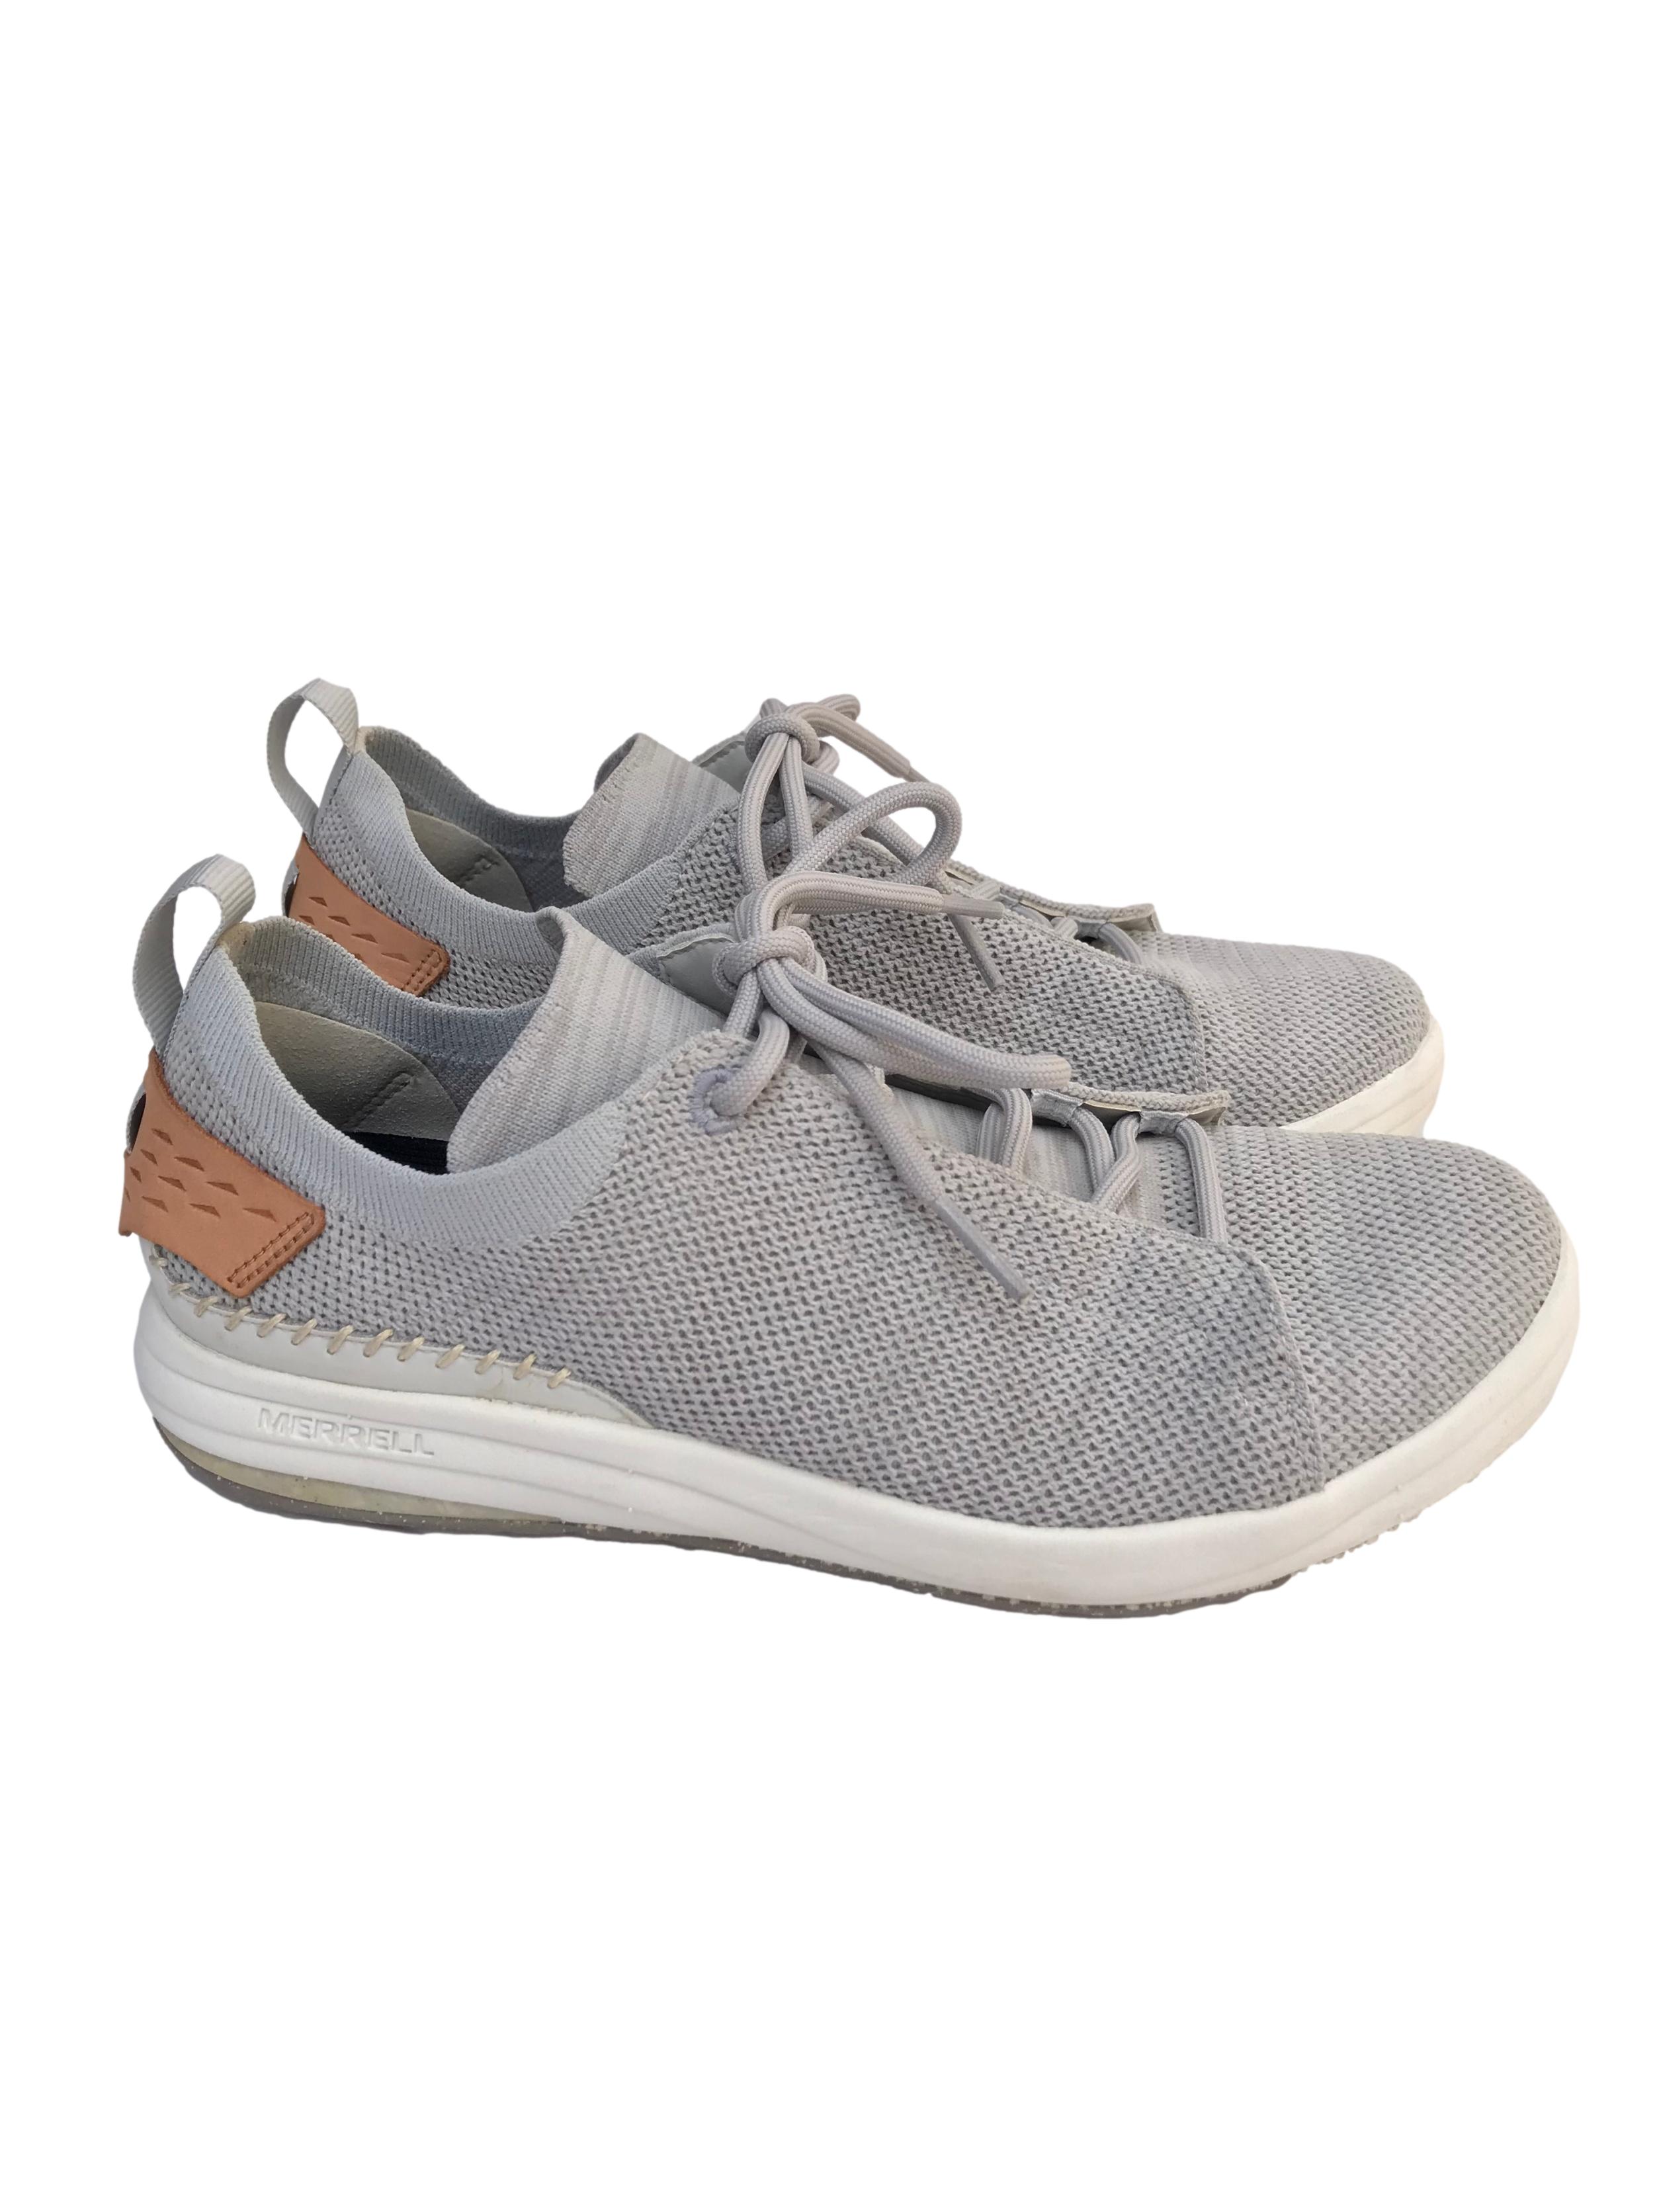 Zapatillas Merrell Gridway Glacier Grey. Este calzado está fabricado con materiales reciclados, desde los pasadores hasta la suela. Estado 9/10 Precio original S/499